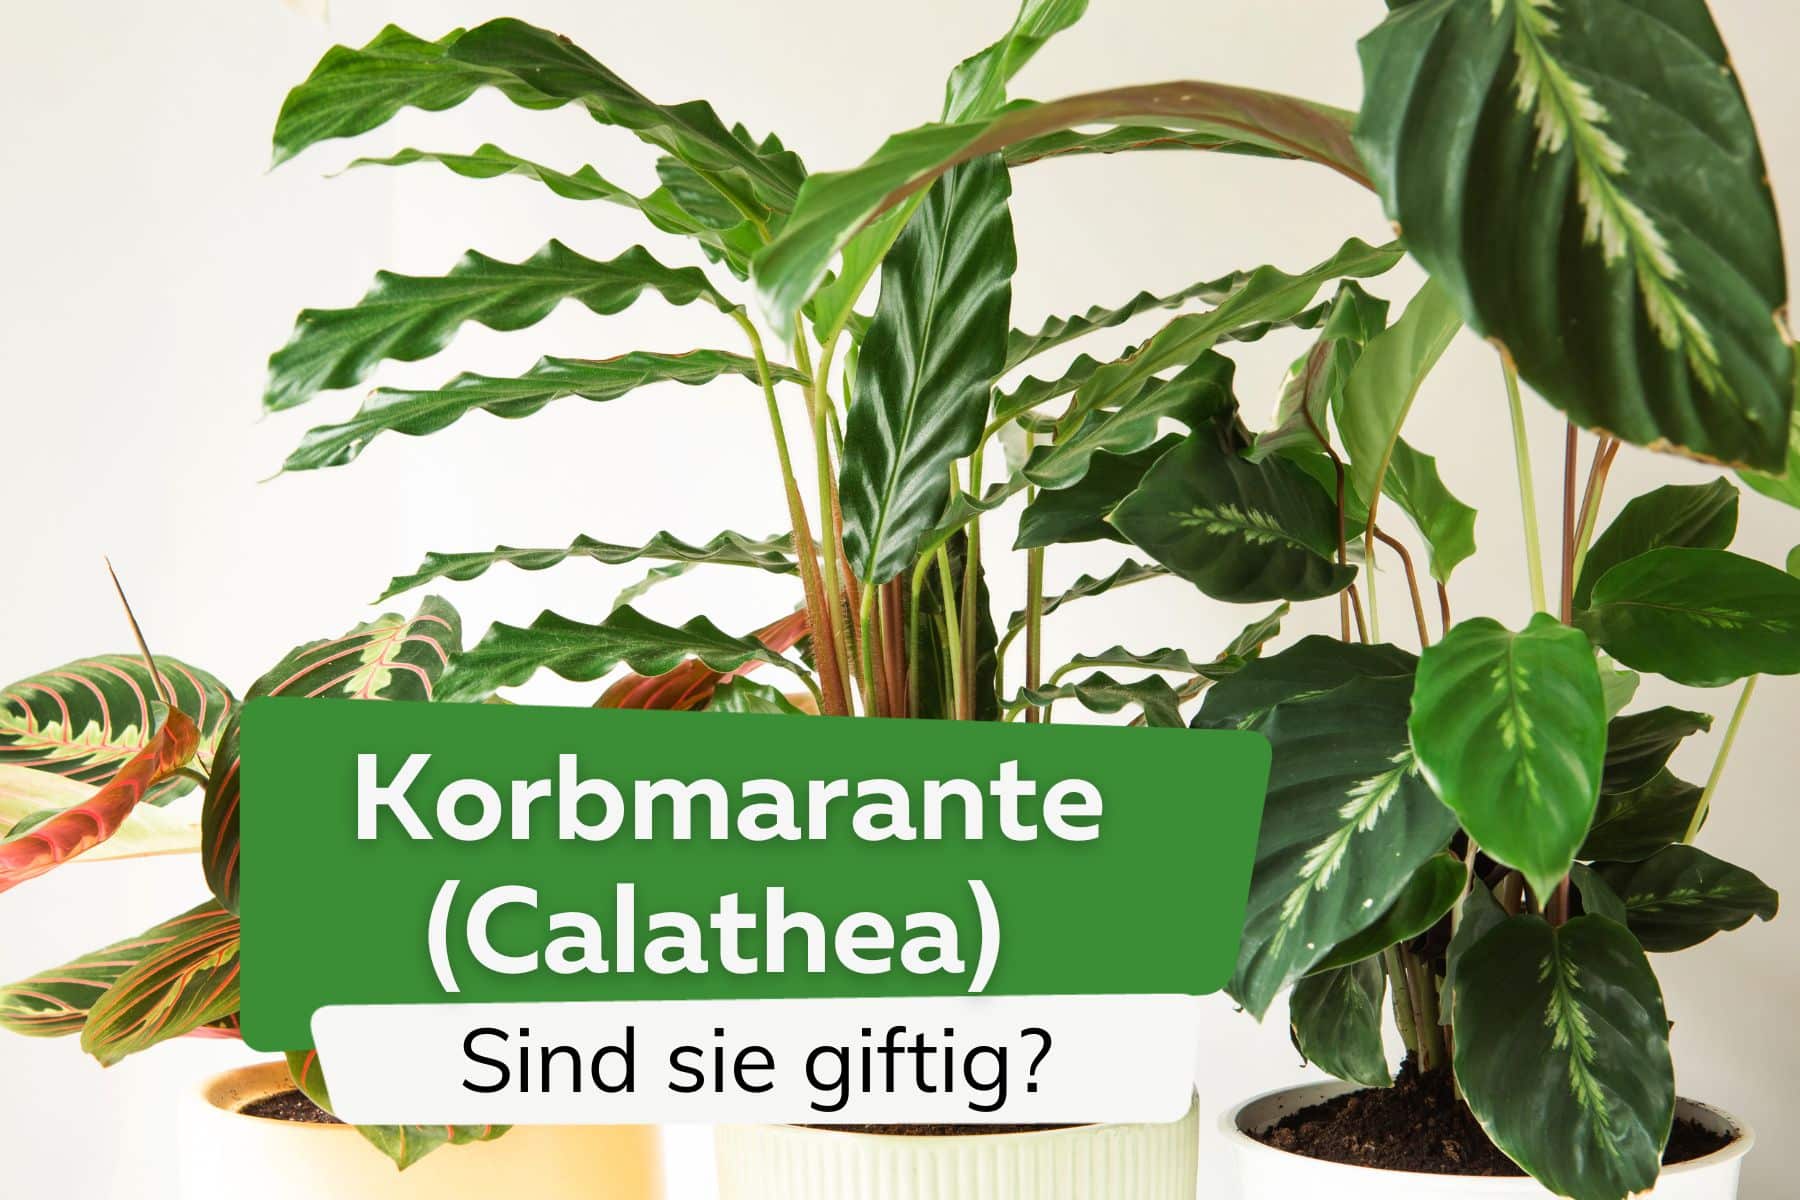 ¿Es venenosa la cesta marant? – Calathea Rufibarba, Lancifolia y Crocata